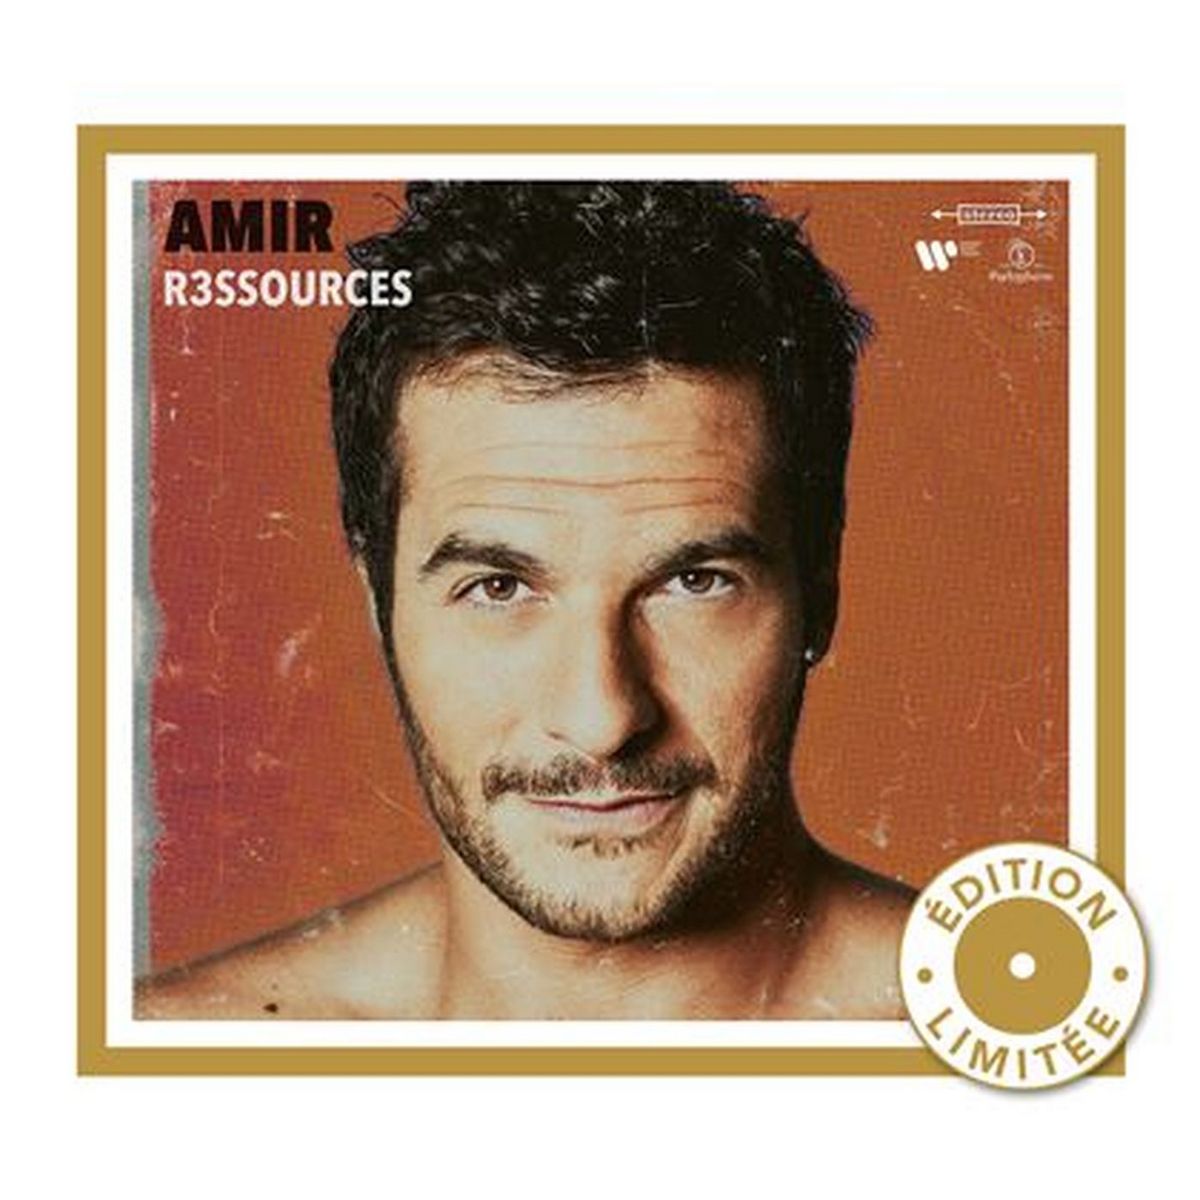 Amir - R3ssources (édition limitée) CD